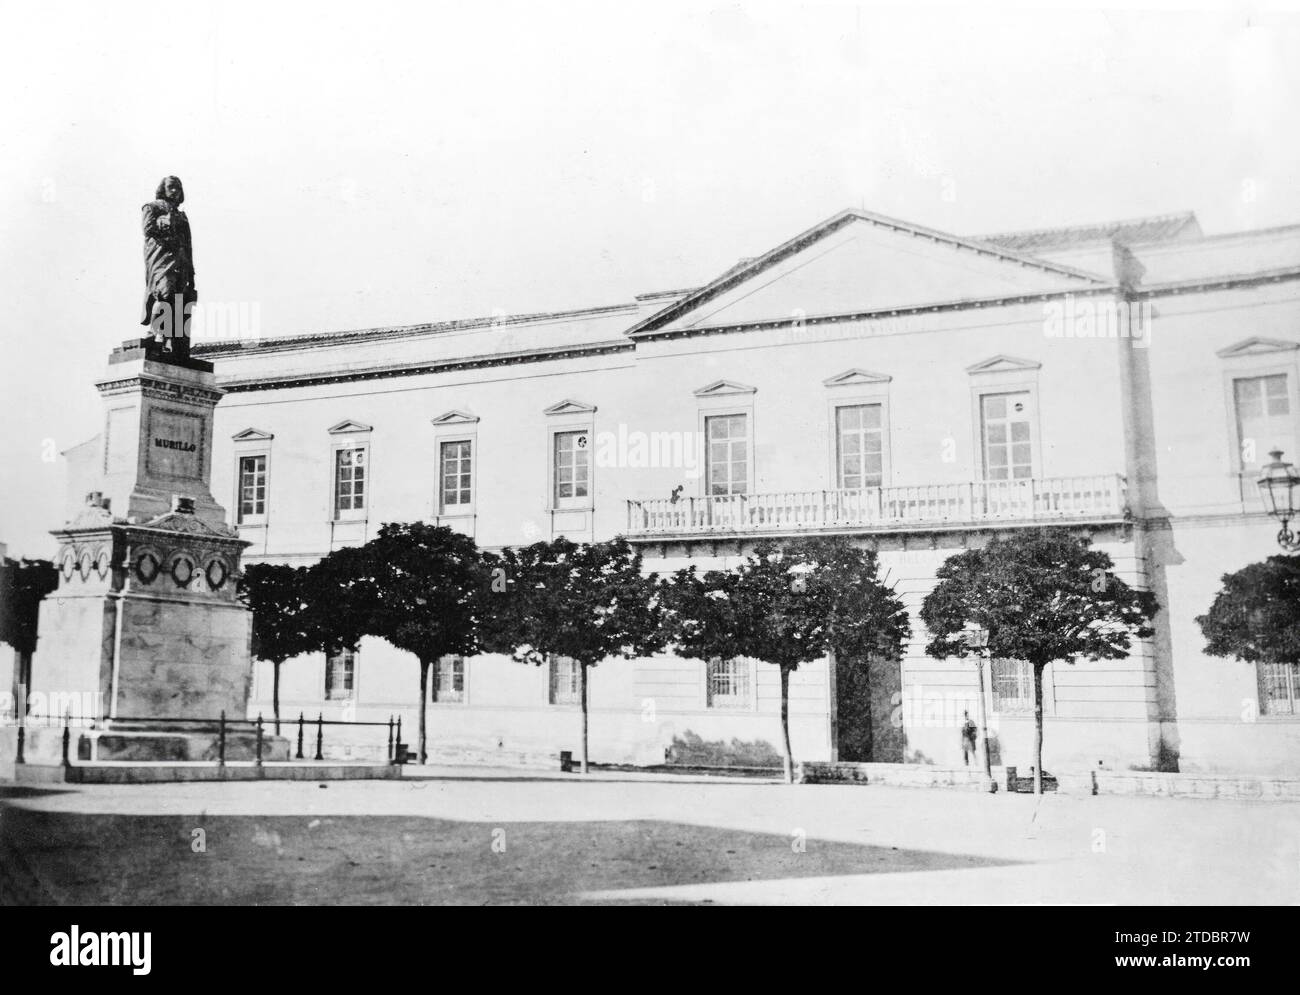 Sevilla, 1870 (CA.). Das Provinzmuseum mit der Statue von Murillo. Aktuelles Museum der Schönen Künste in Sevilla. Quelle: Album / Archivo ABC / CARMONA Stockfoto